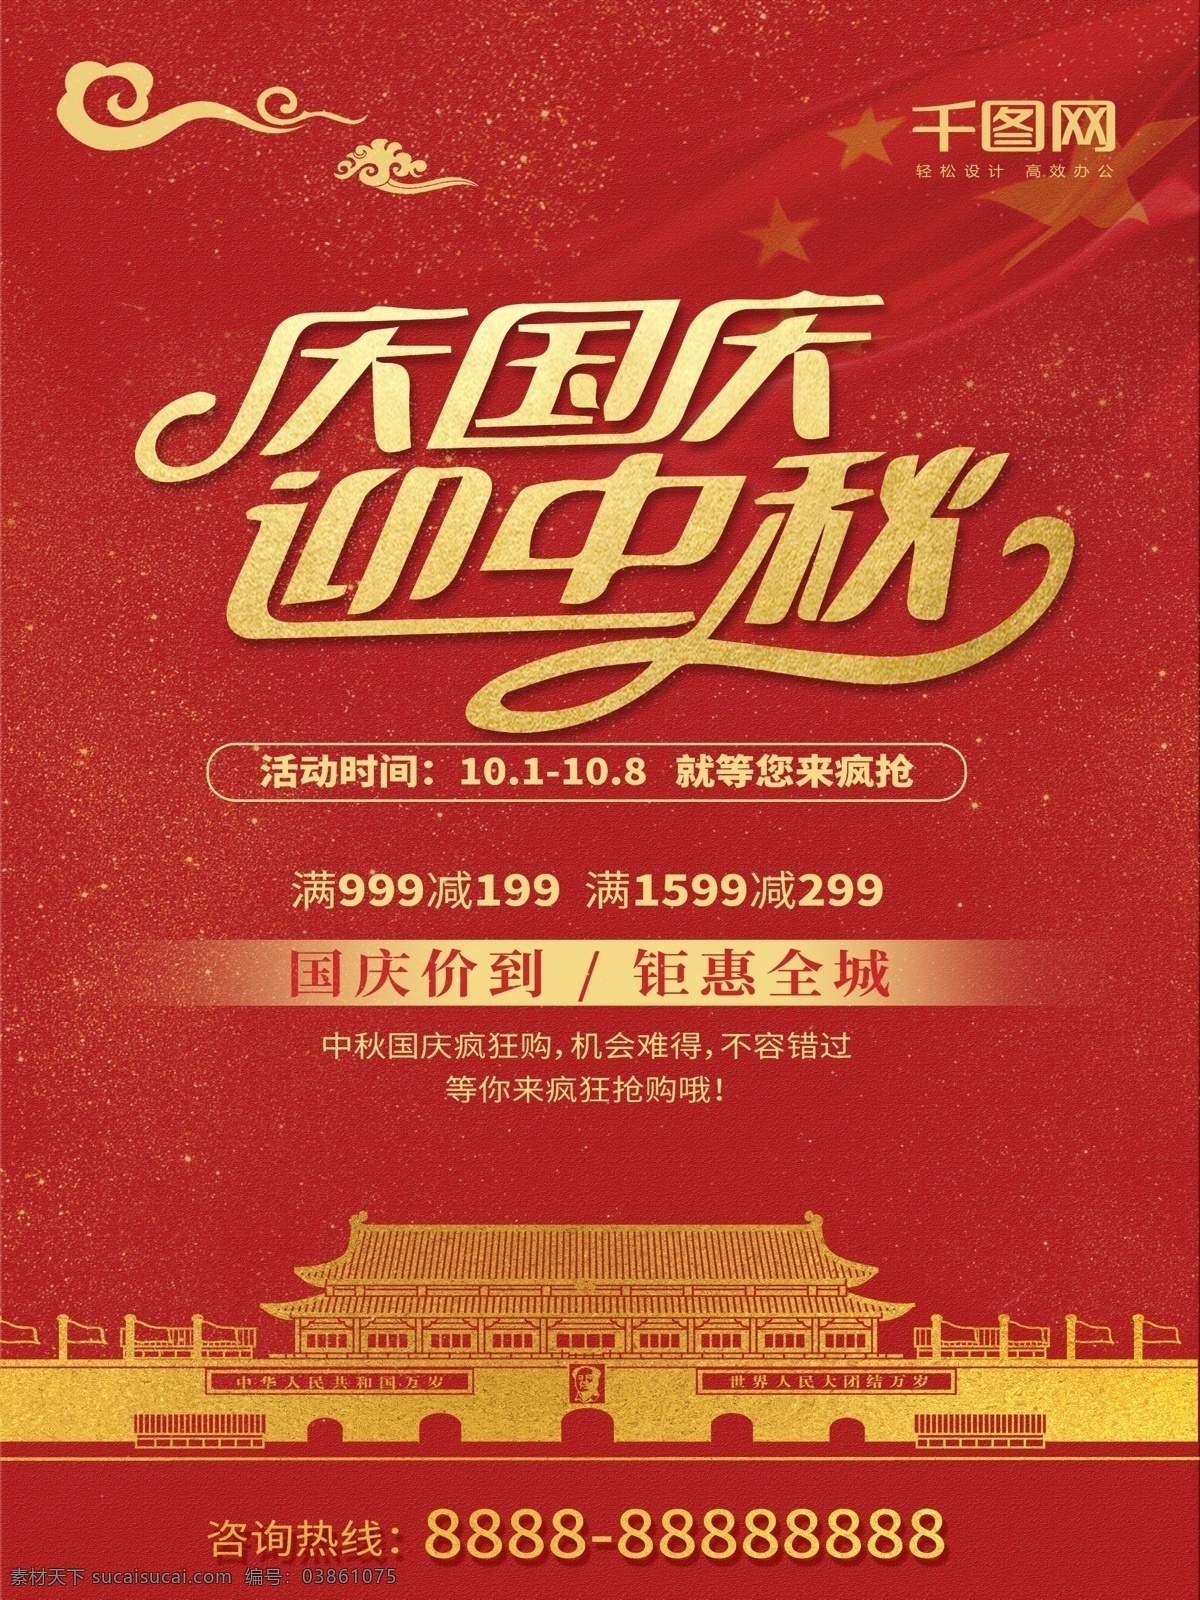 时尚 简洁 大气 红色 传统 中秋 国庆 双 节 促销 海报 双节